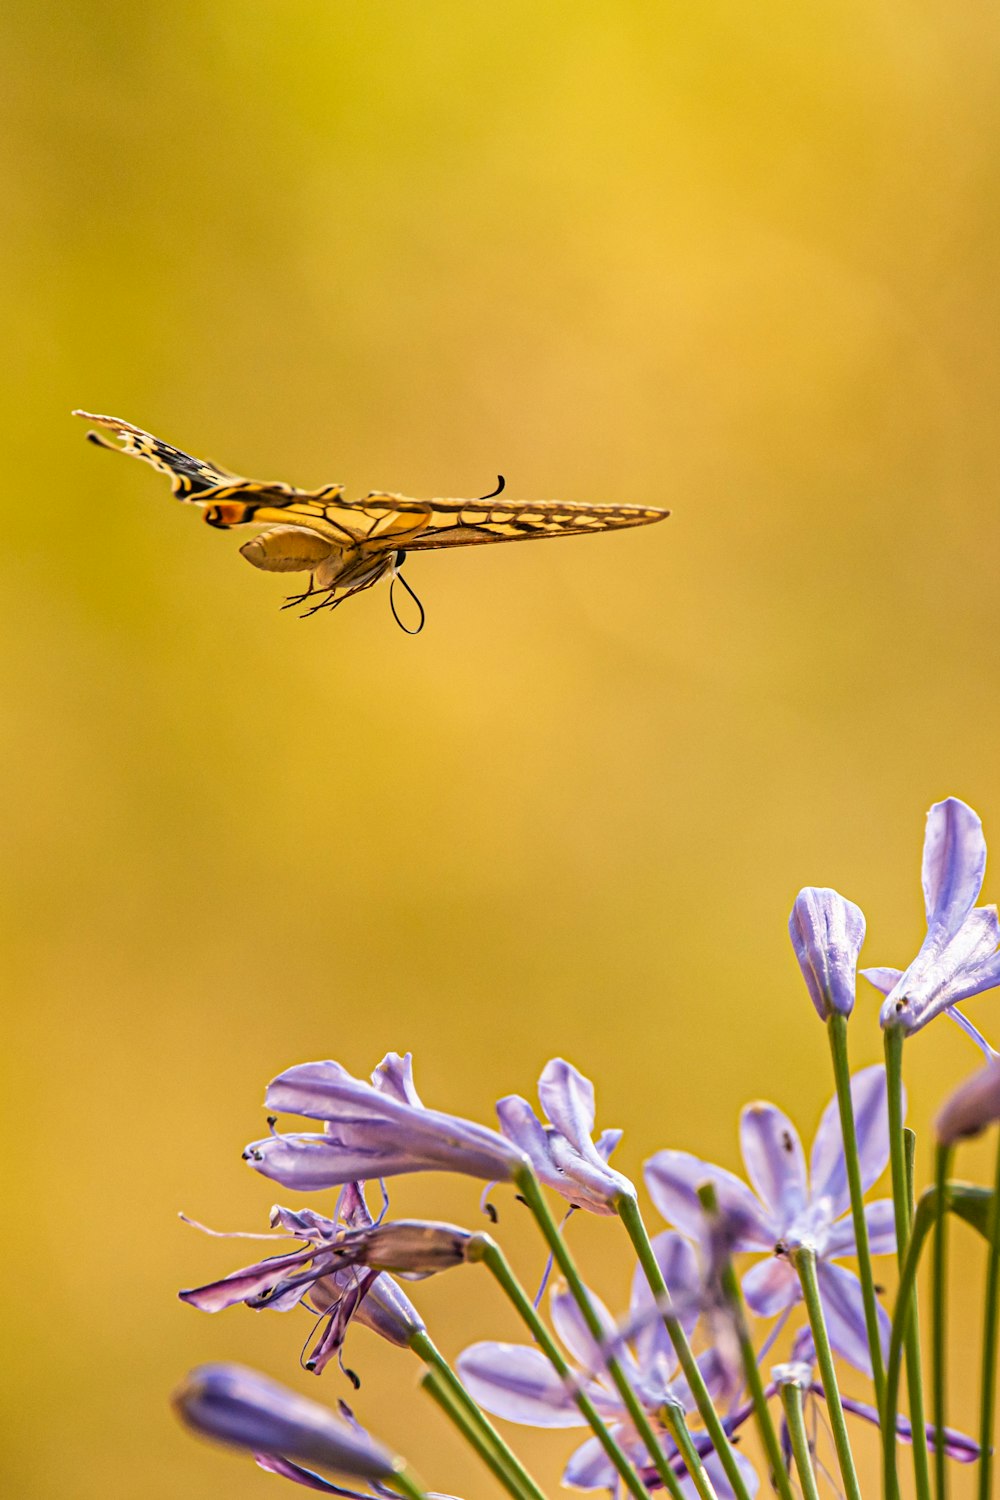 libellule brune et noire perchée sur la fleur violette en gros plan photographie pendant la journée